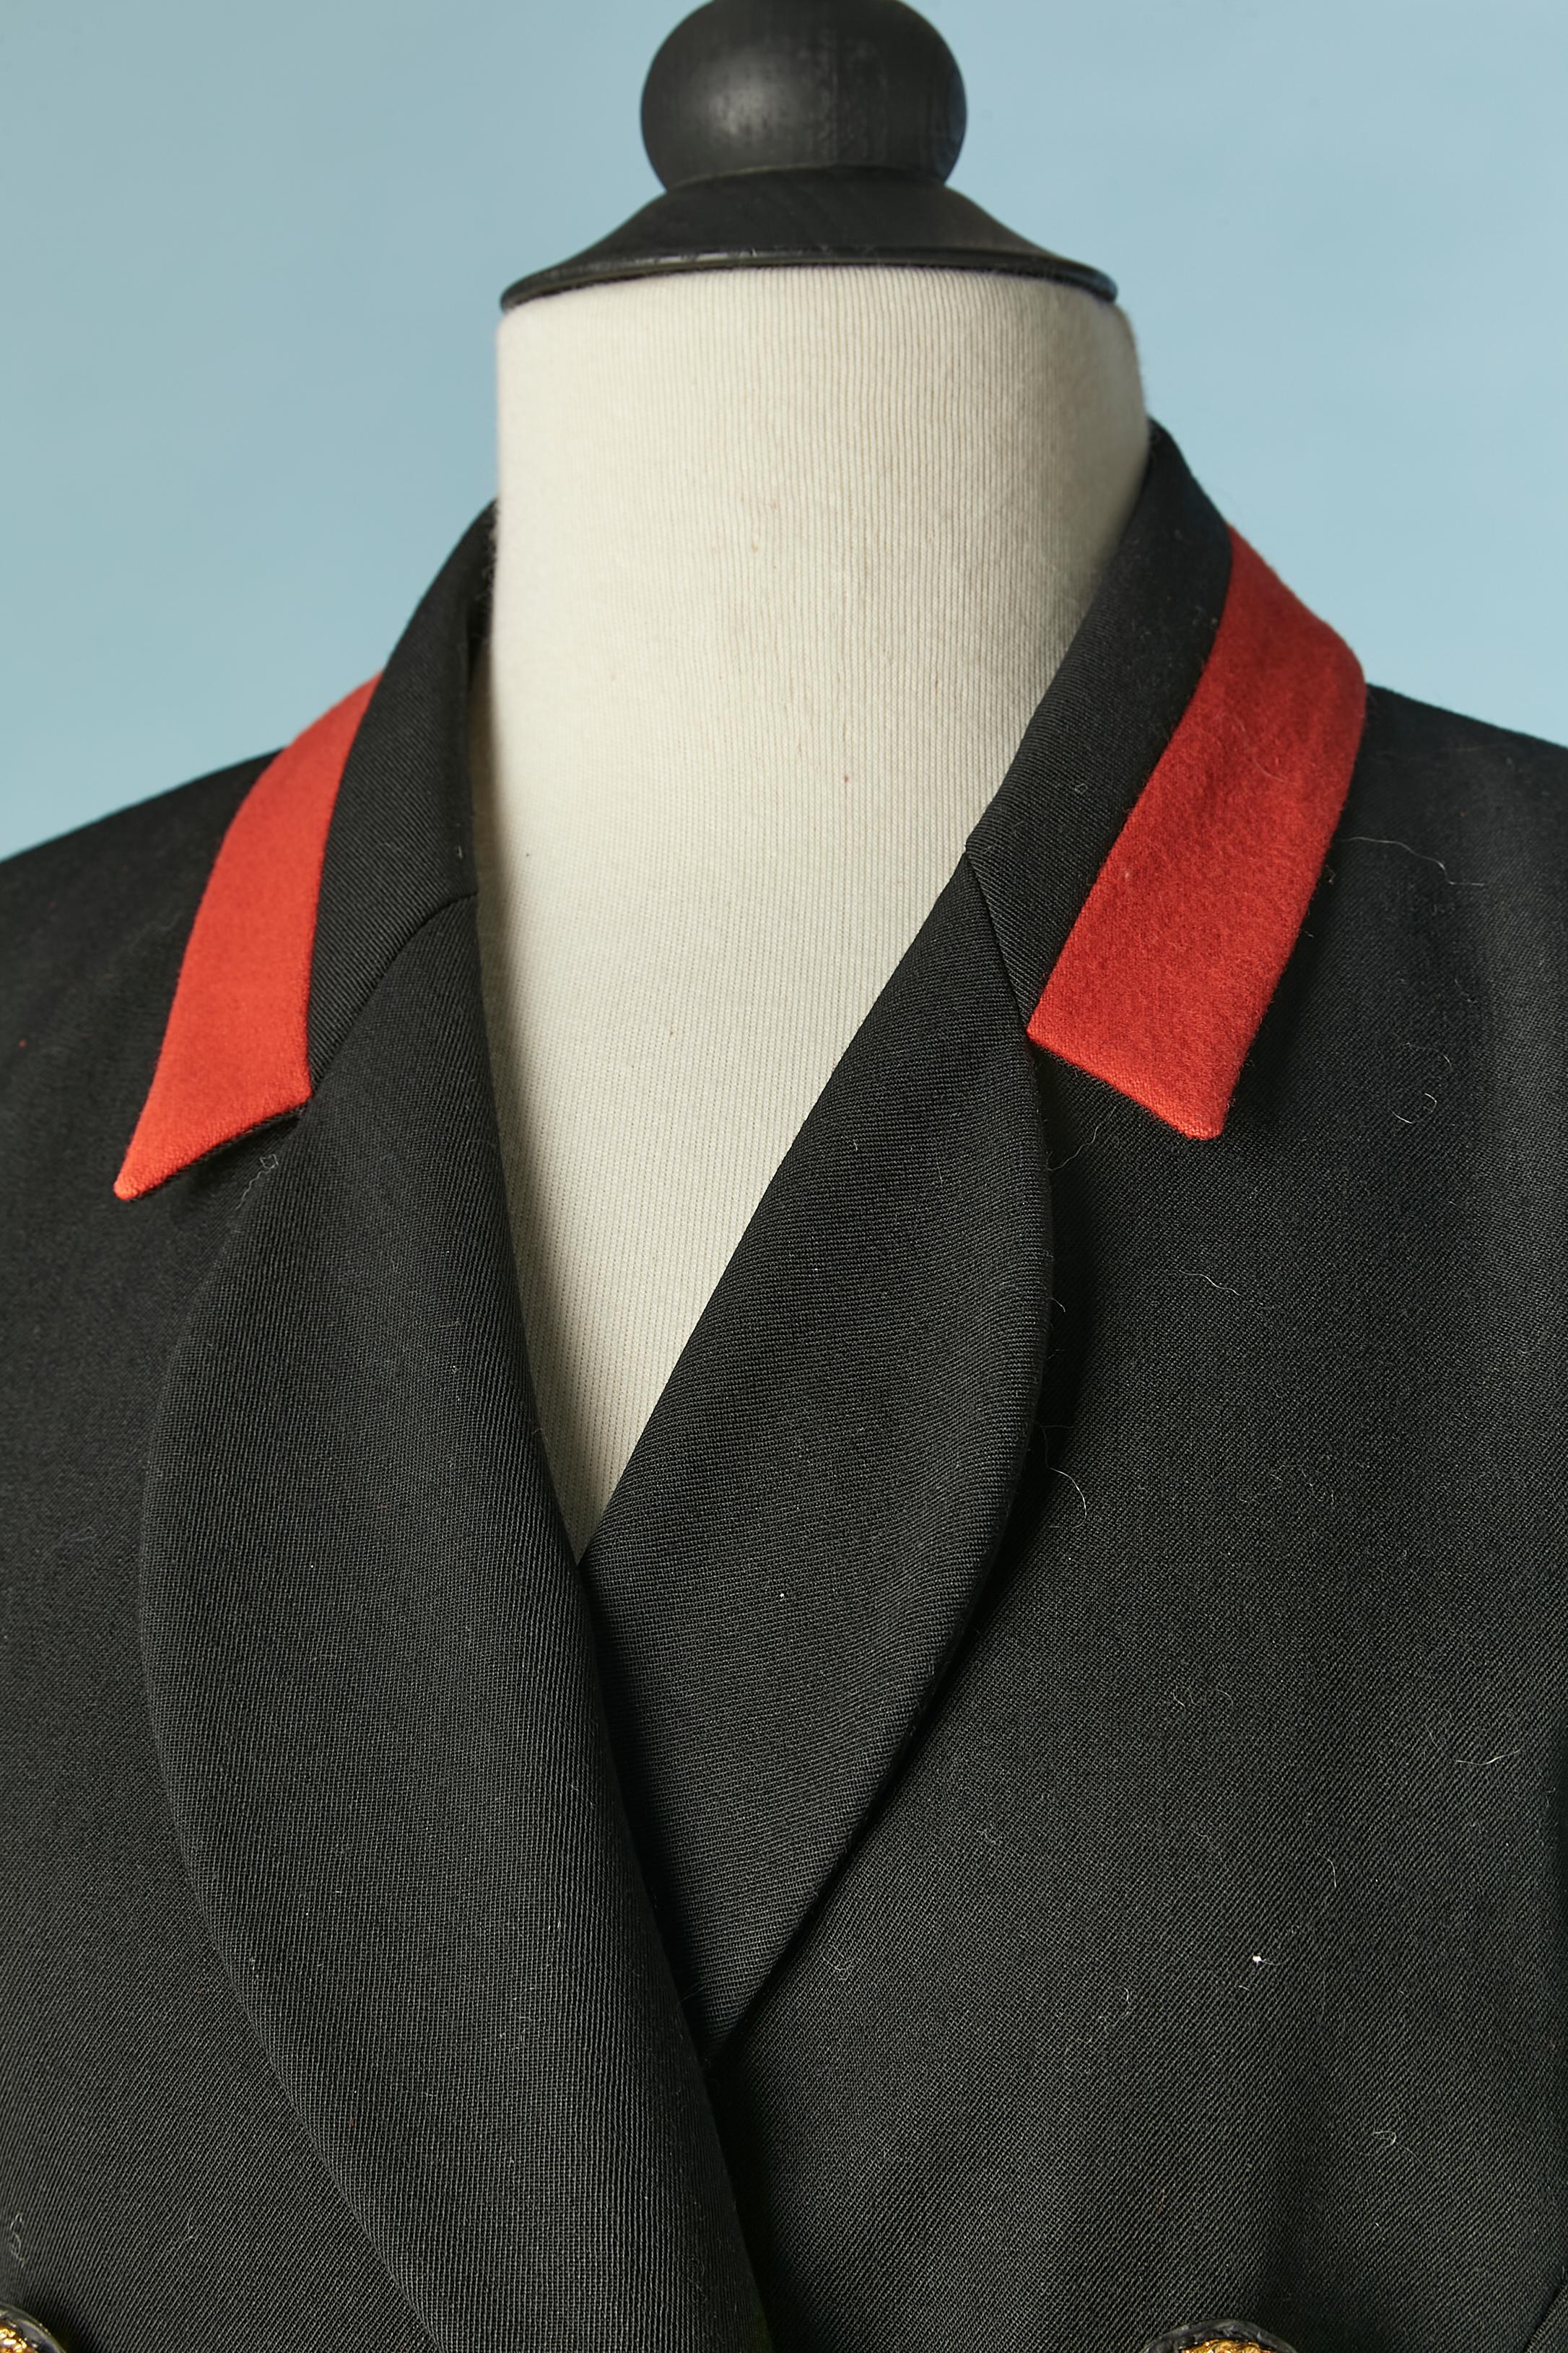 Schwarze doppelreihige Jacke mit goldenen Knöpfen und roten Details. Hauptstoff: Wolle. Futter: wahrscheinlich Acetat oder Viskose. 
Schulterpads. Schnittführung. 2 Schlitze im unteren Bereich vorne und 3 Schlitze hinten 
GRÖSSE 40 (Fr) 10 (US) L 